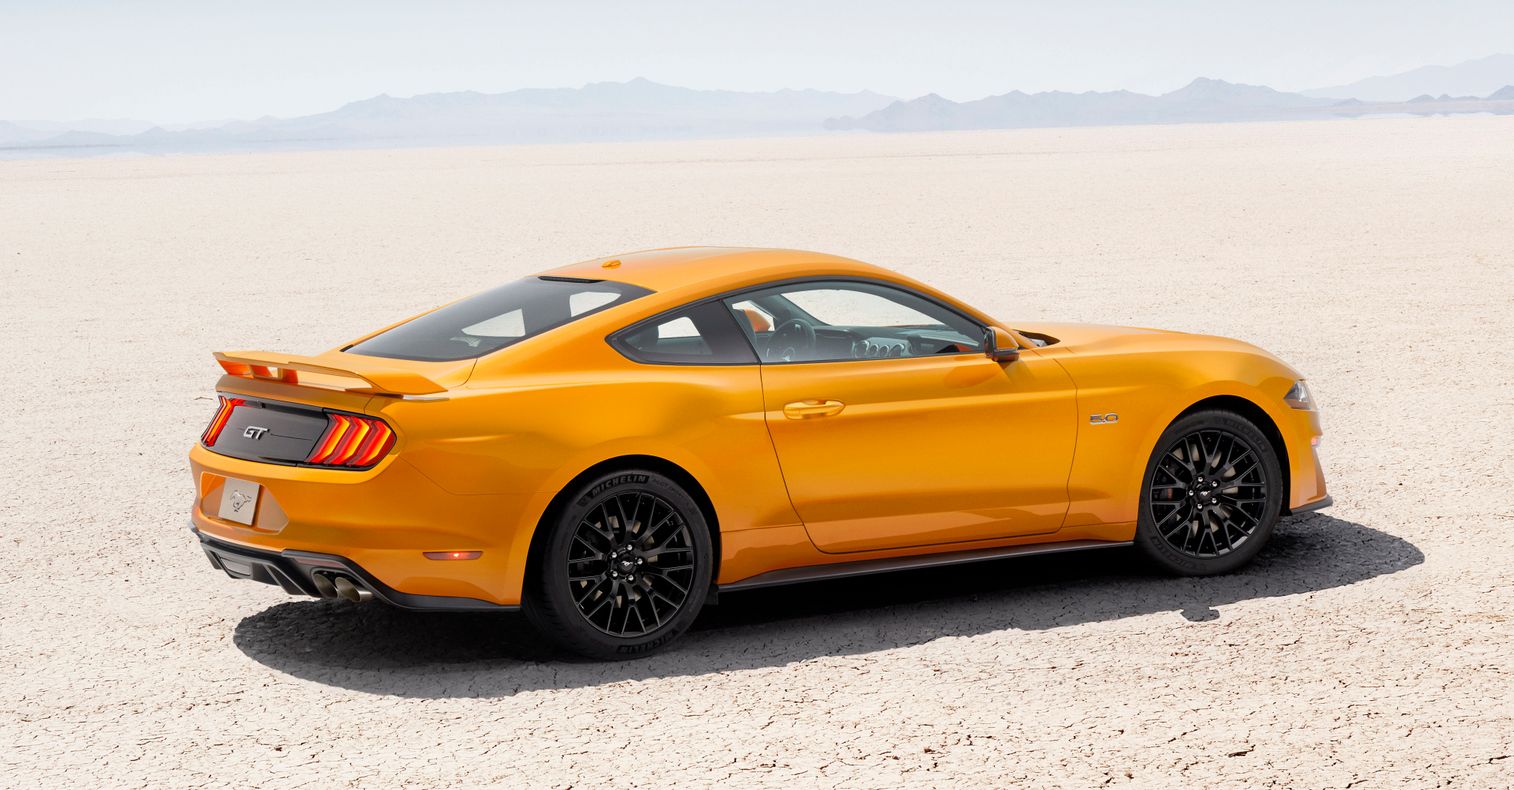 Pré-venda do Mustang começa em 11 de dezembro